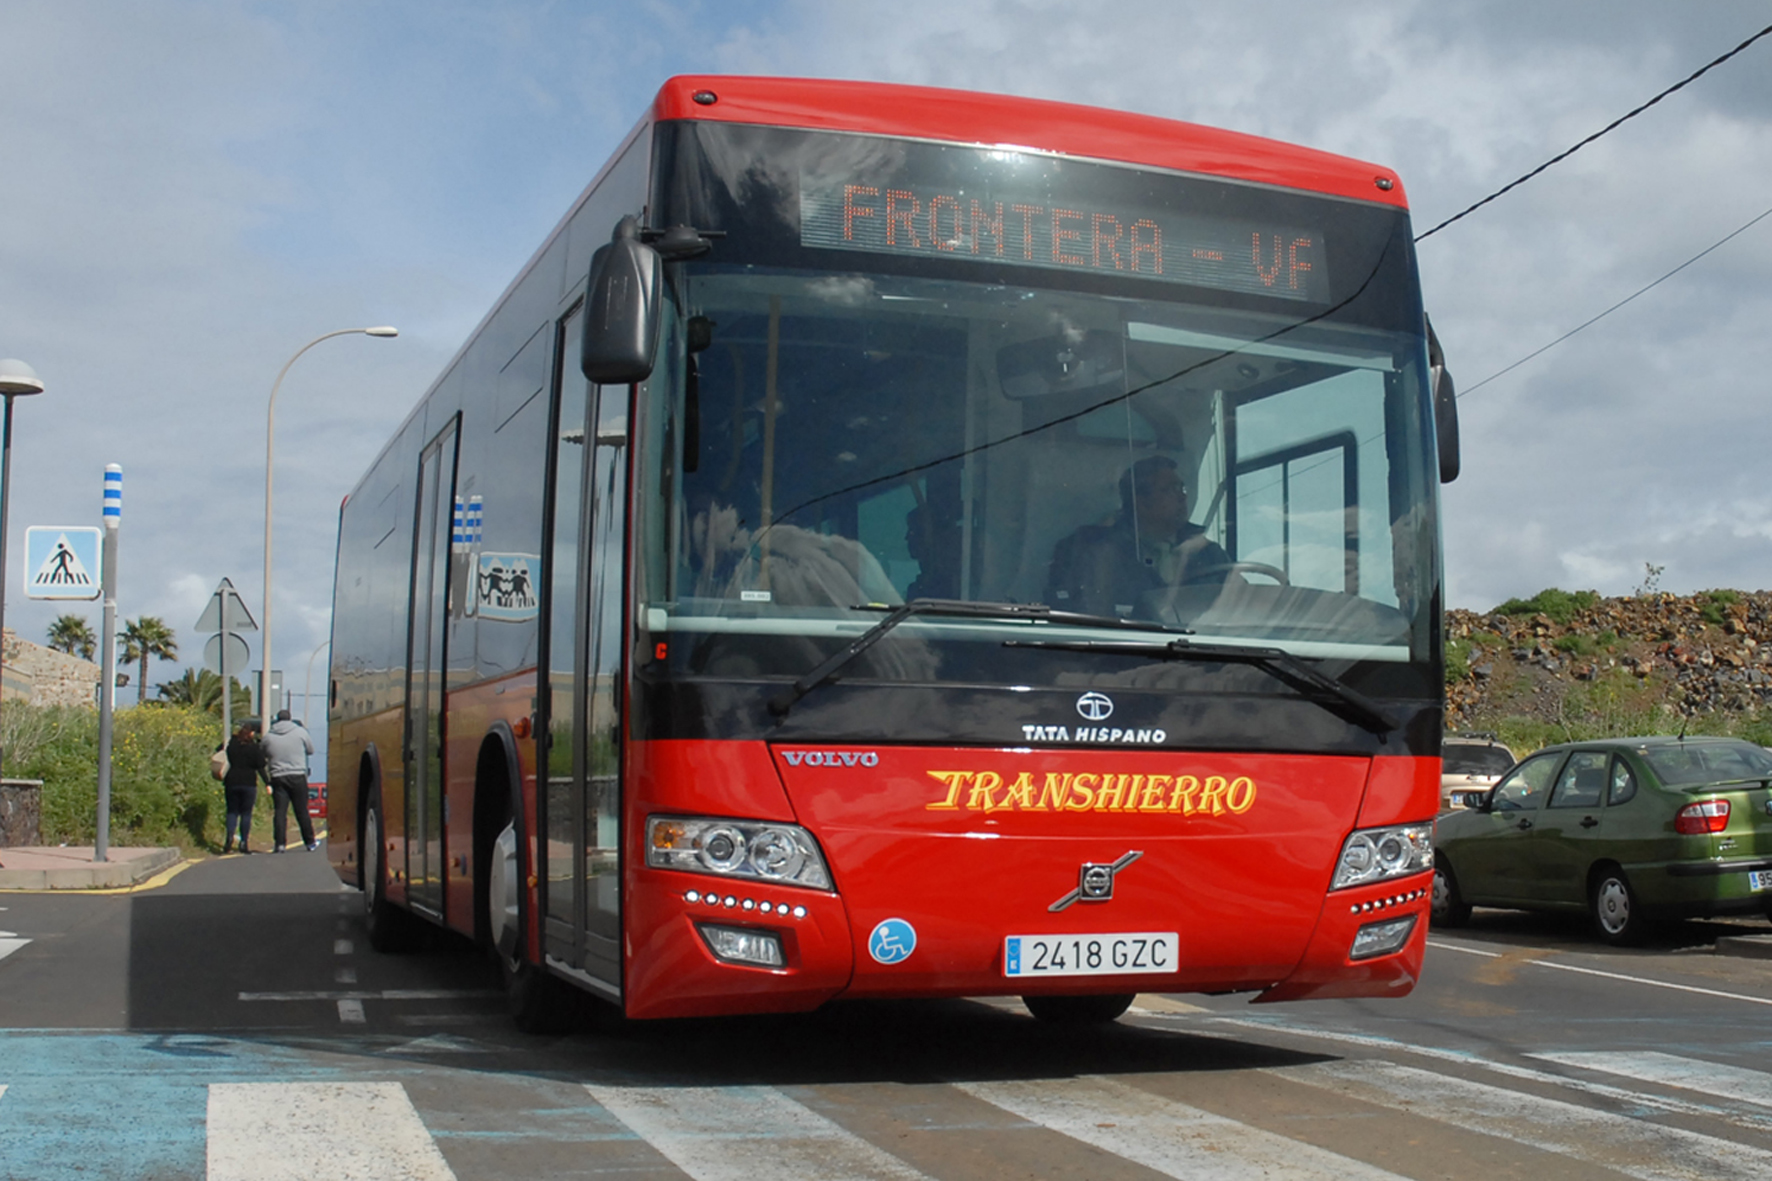 TransHierro actualiza las tarifas del transporte regular de viajeros con un céntimo de incremento a partir de noviembre